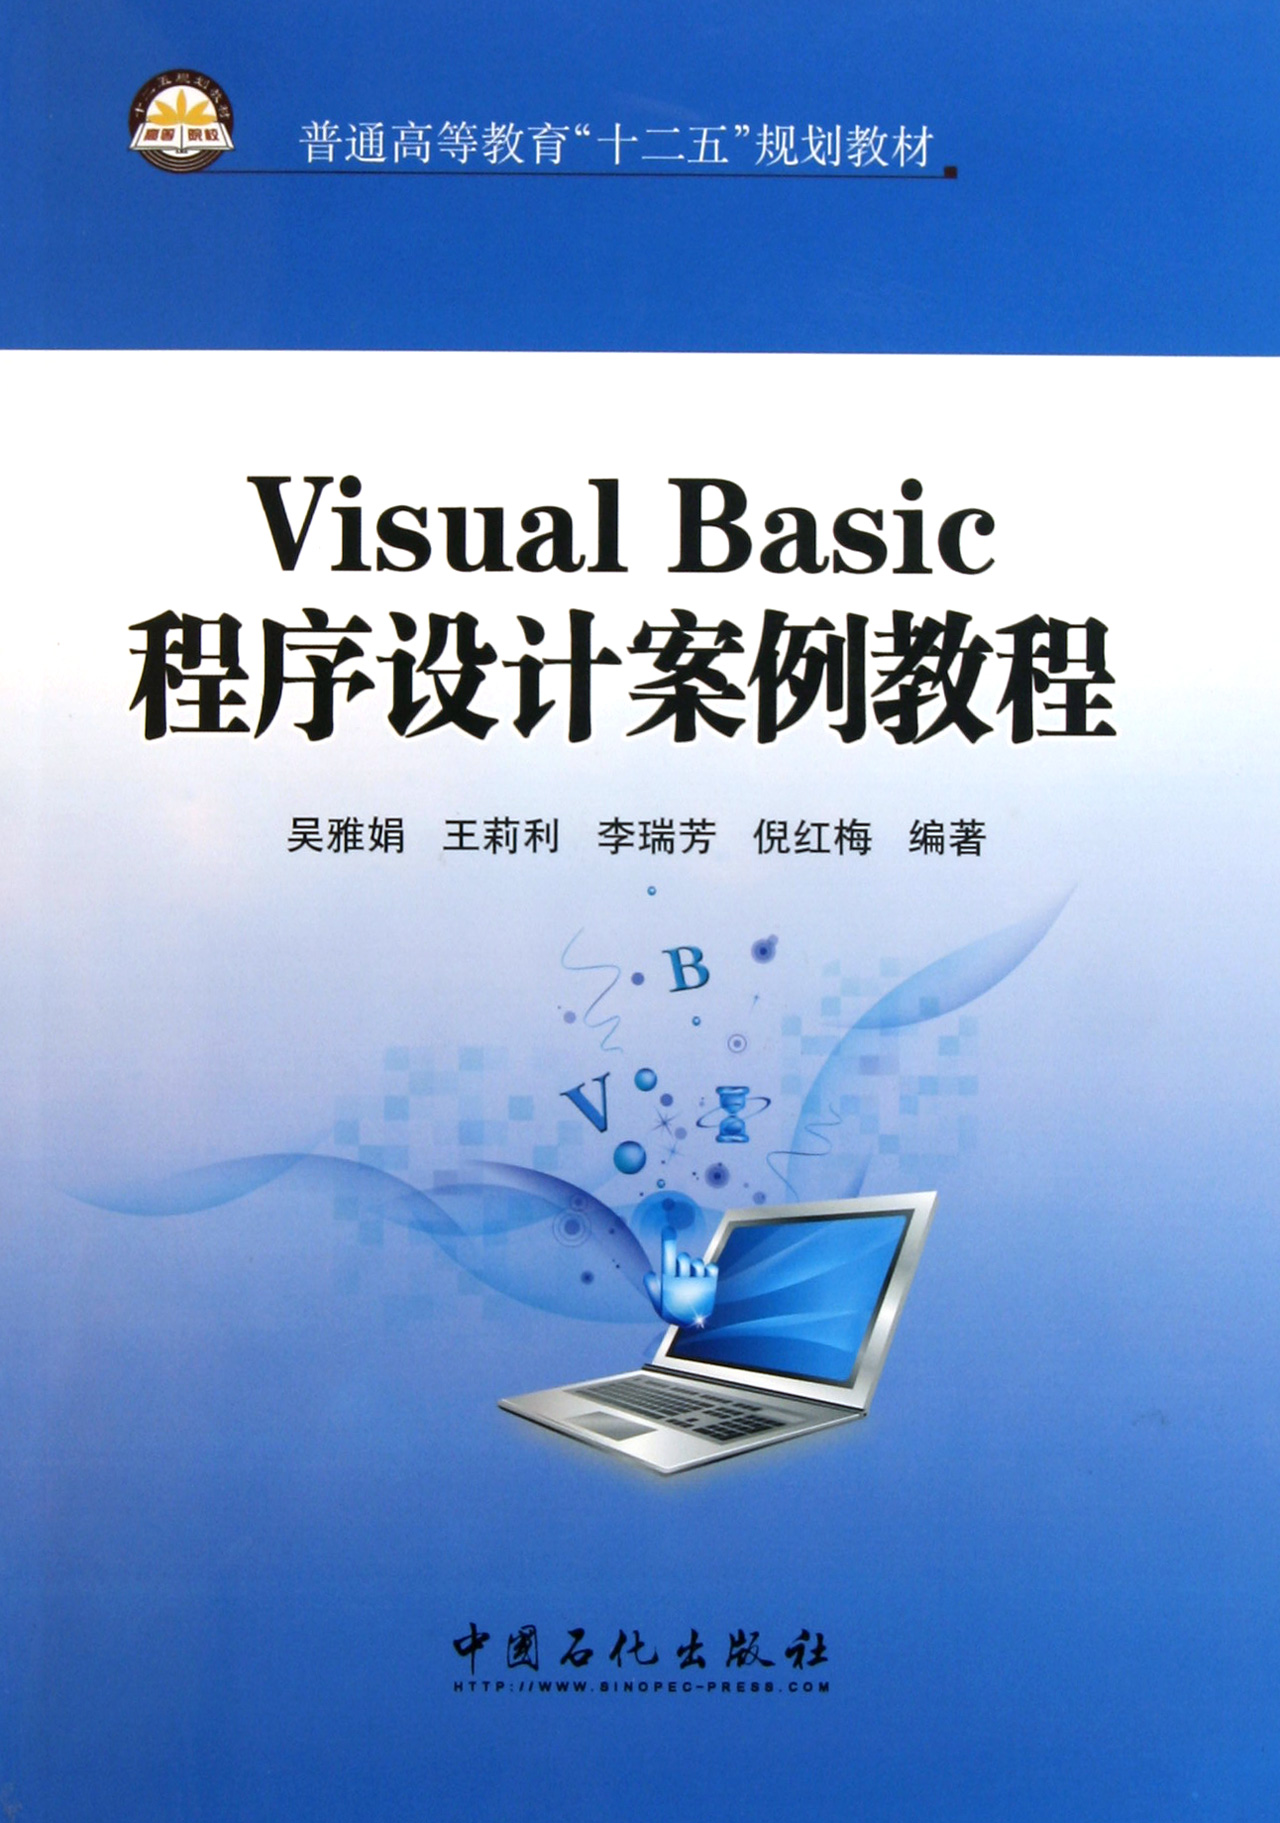 Visual Basic程序設計與應用案例.jpg